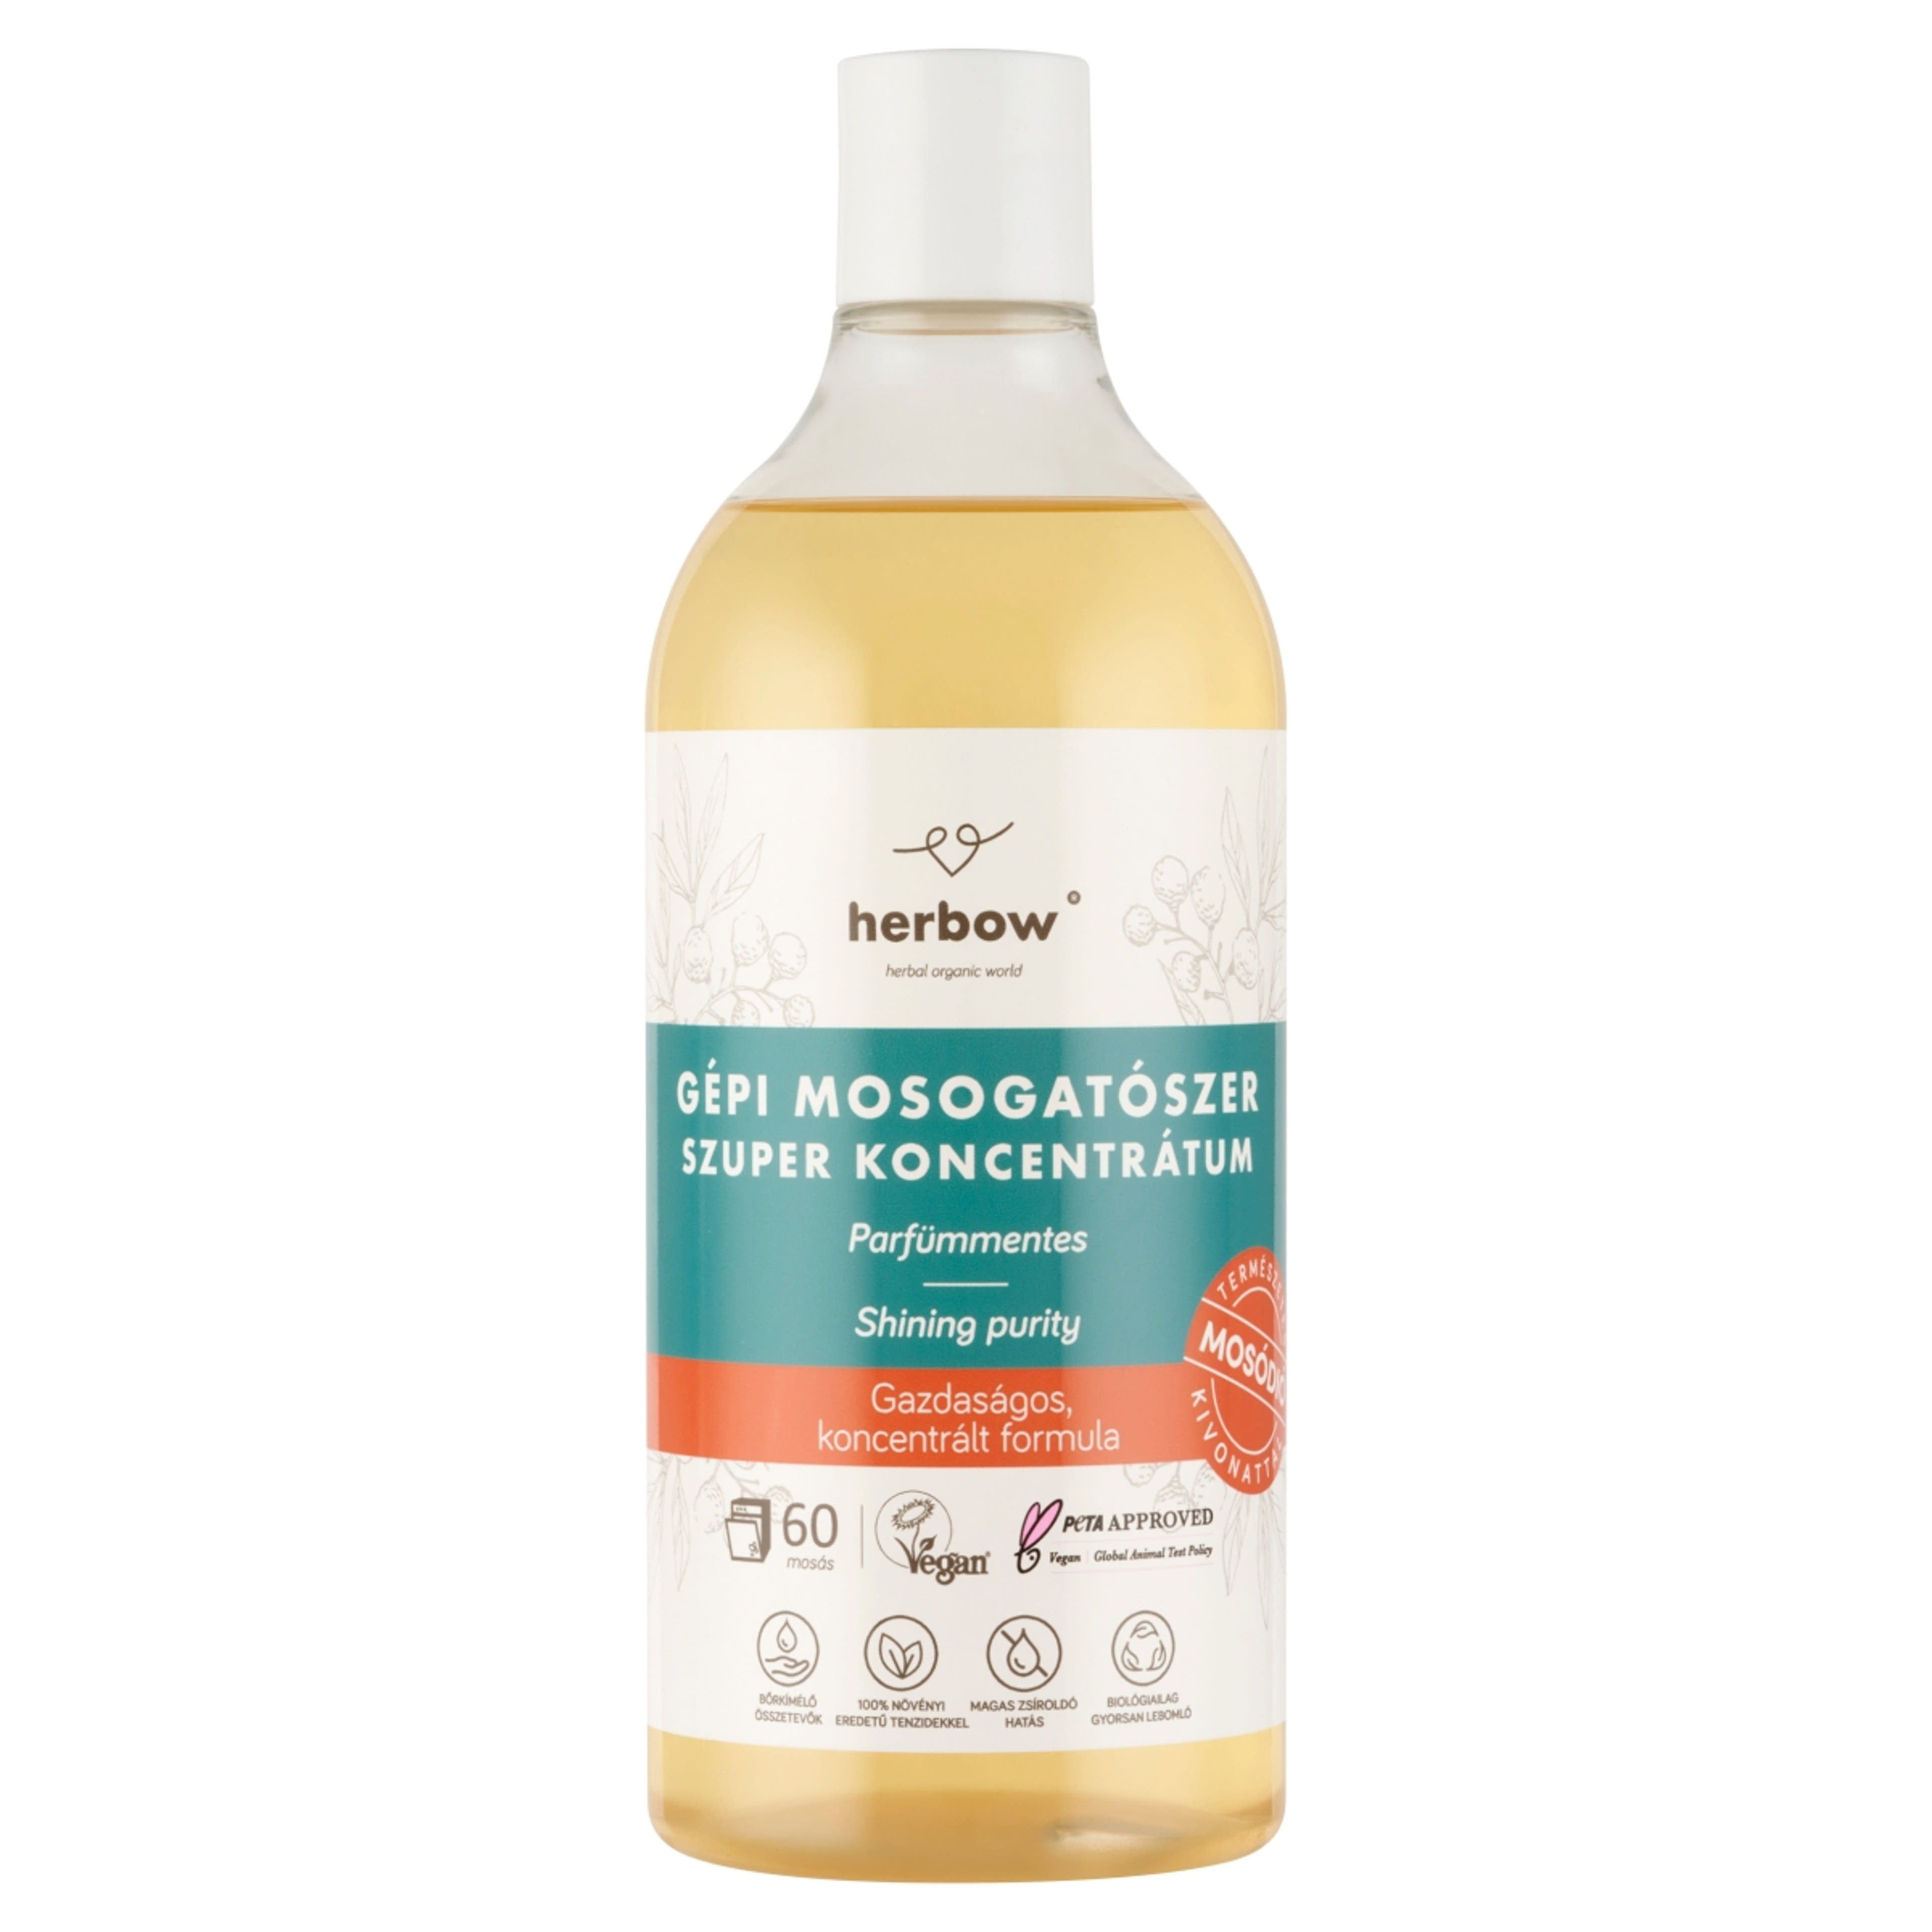 Herbow gépi mosogatószer parfümmentes - 750 ml-1